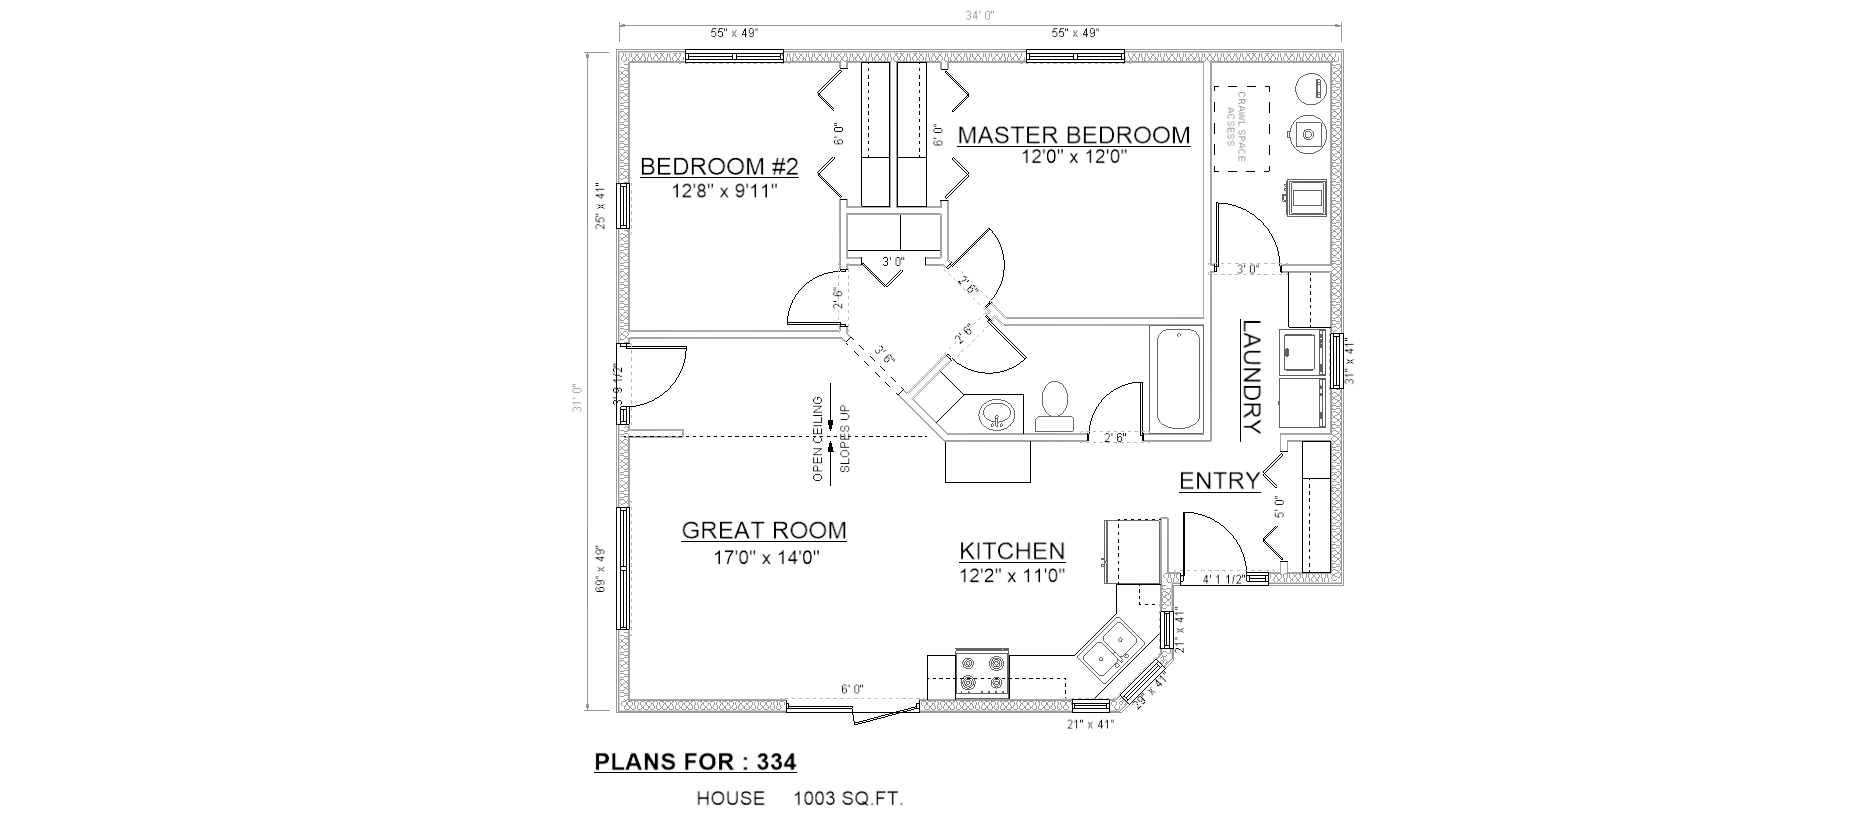 Penner Homes Floor Plan Id: 334